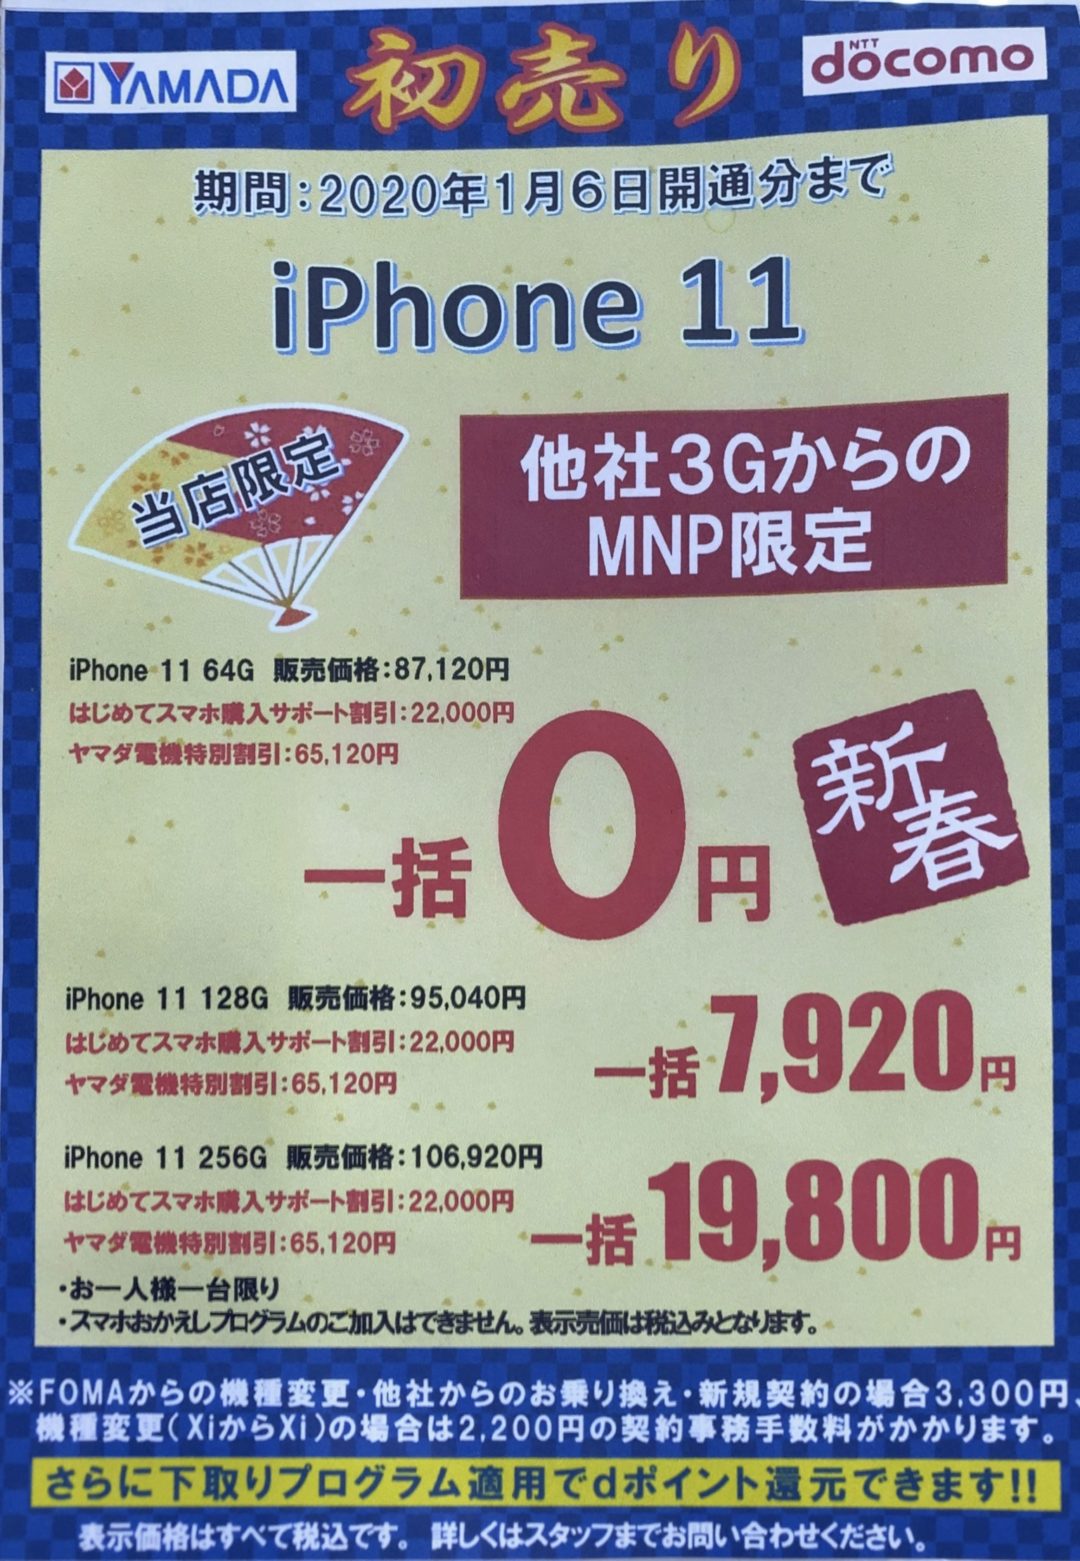 初売り ヤマダ電機でもドコモのiphone 11が3gからのmnpで8 7万円割引で一括0円から販売を確認 1 6 月 まで